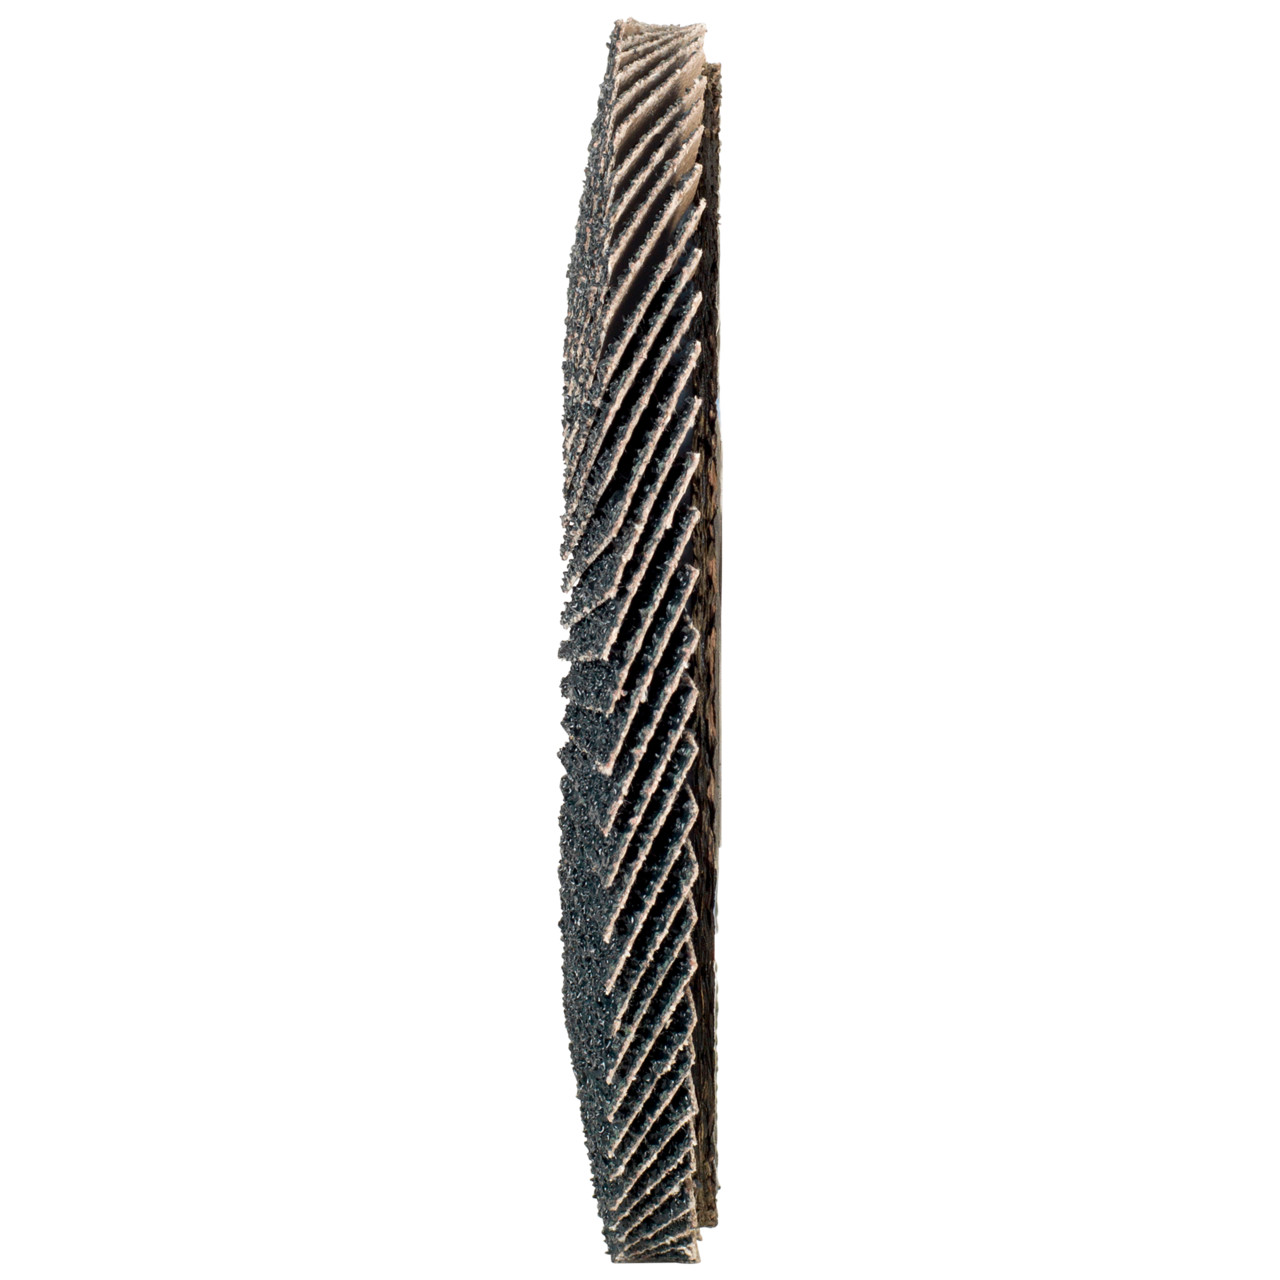 Tyrolit Rondelle éventail DxH 178x22,2in1 pour acier &amp; acier inoxydable, P40, forme : 28A - modèle droit (modèle à corps en fibre de verre), art. 668696